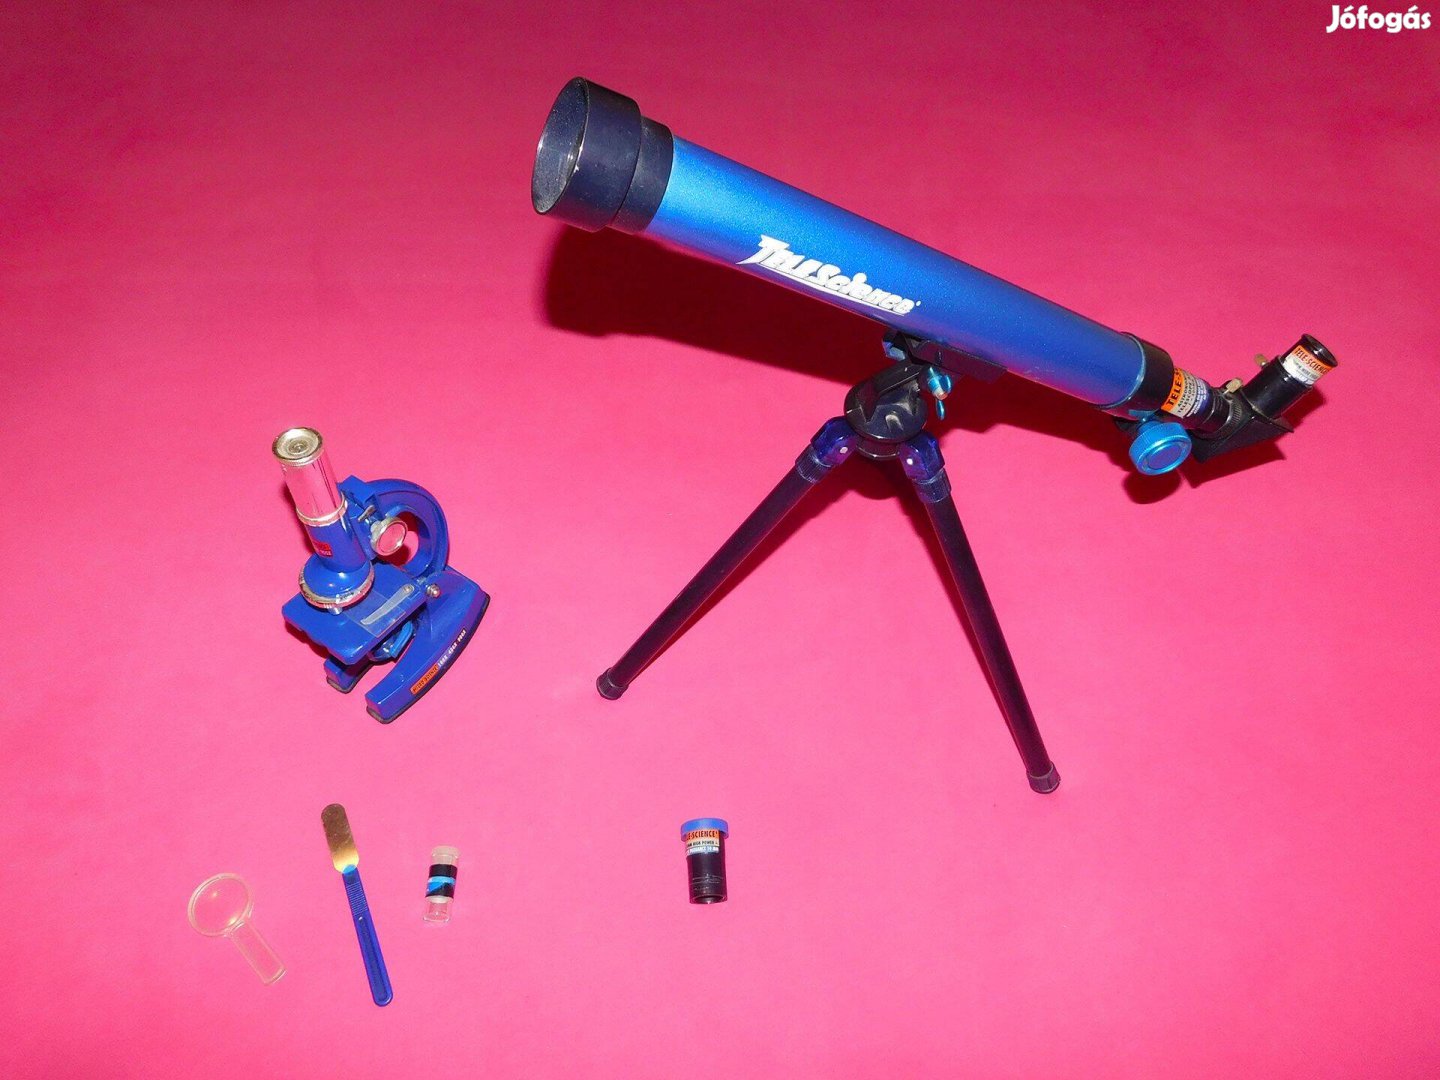 Ingyen Posta, Teleszkóp - mikroszkóp szett gyerekeknek, 6 éves kortól